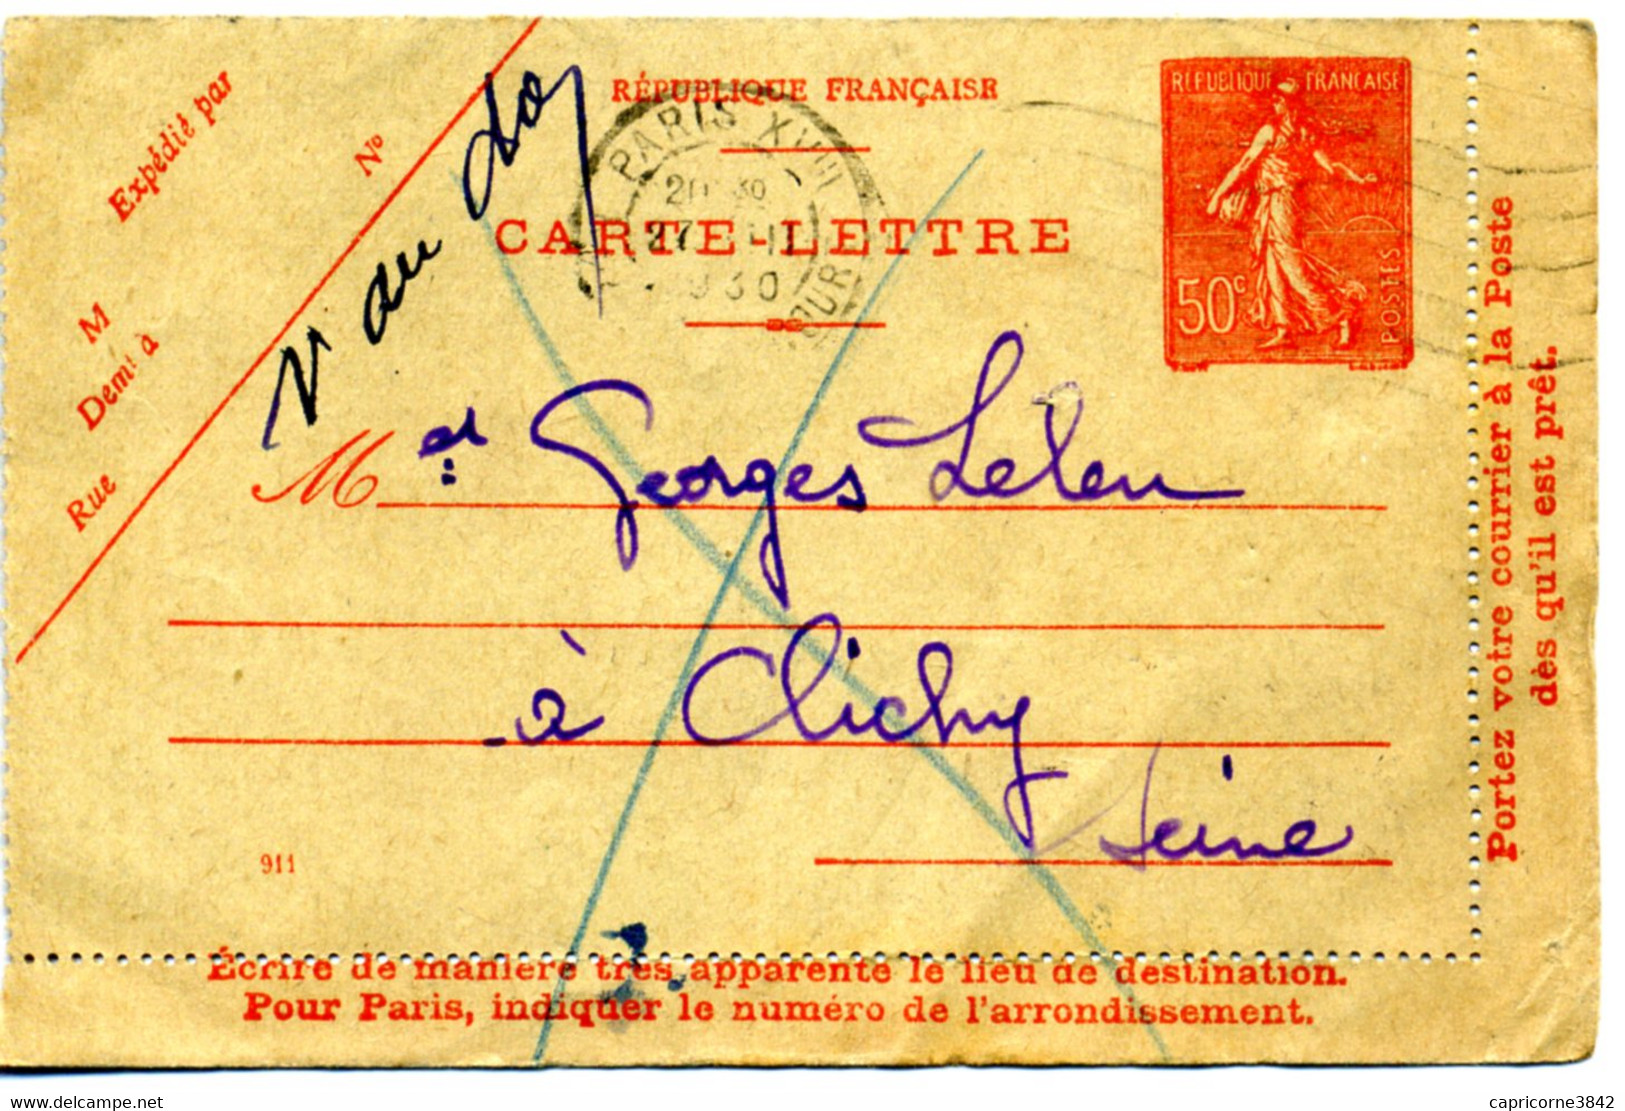 1930 - Carte-lettre De Paris XVIII - Tp 50ct N° 199 - Date 911 - Verso "INCONNU A L'APPEL DU FACTEUR" - Lettre Facteur N - Cartes-lettres